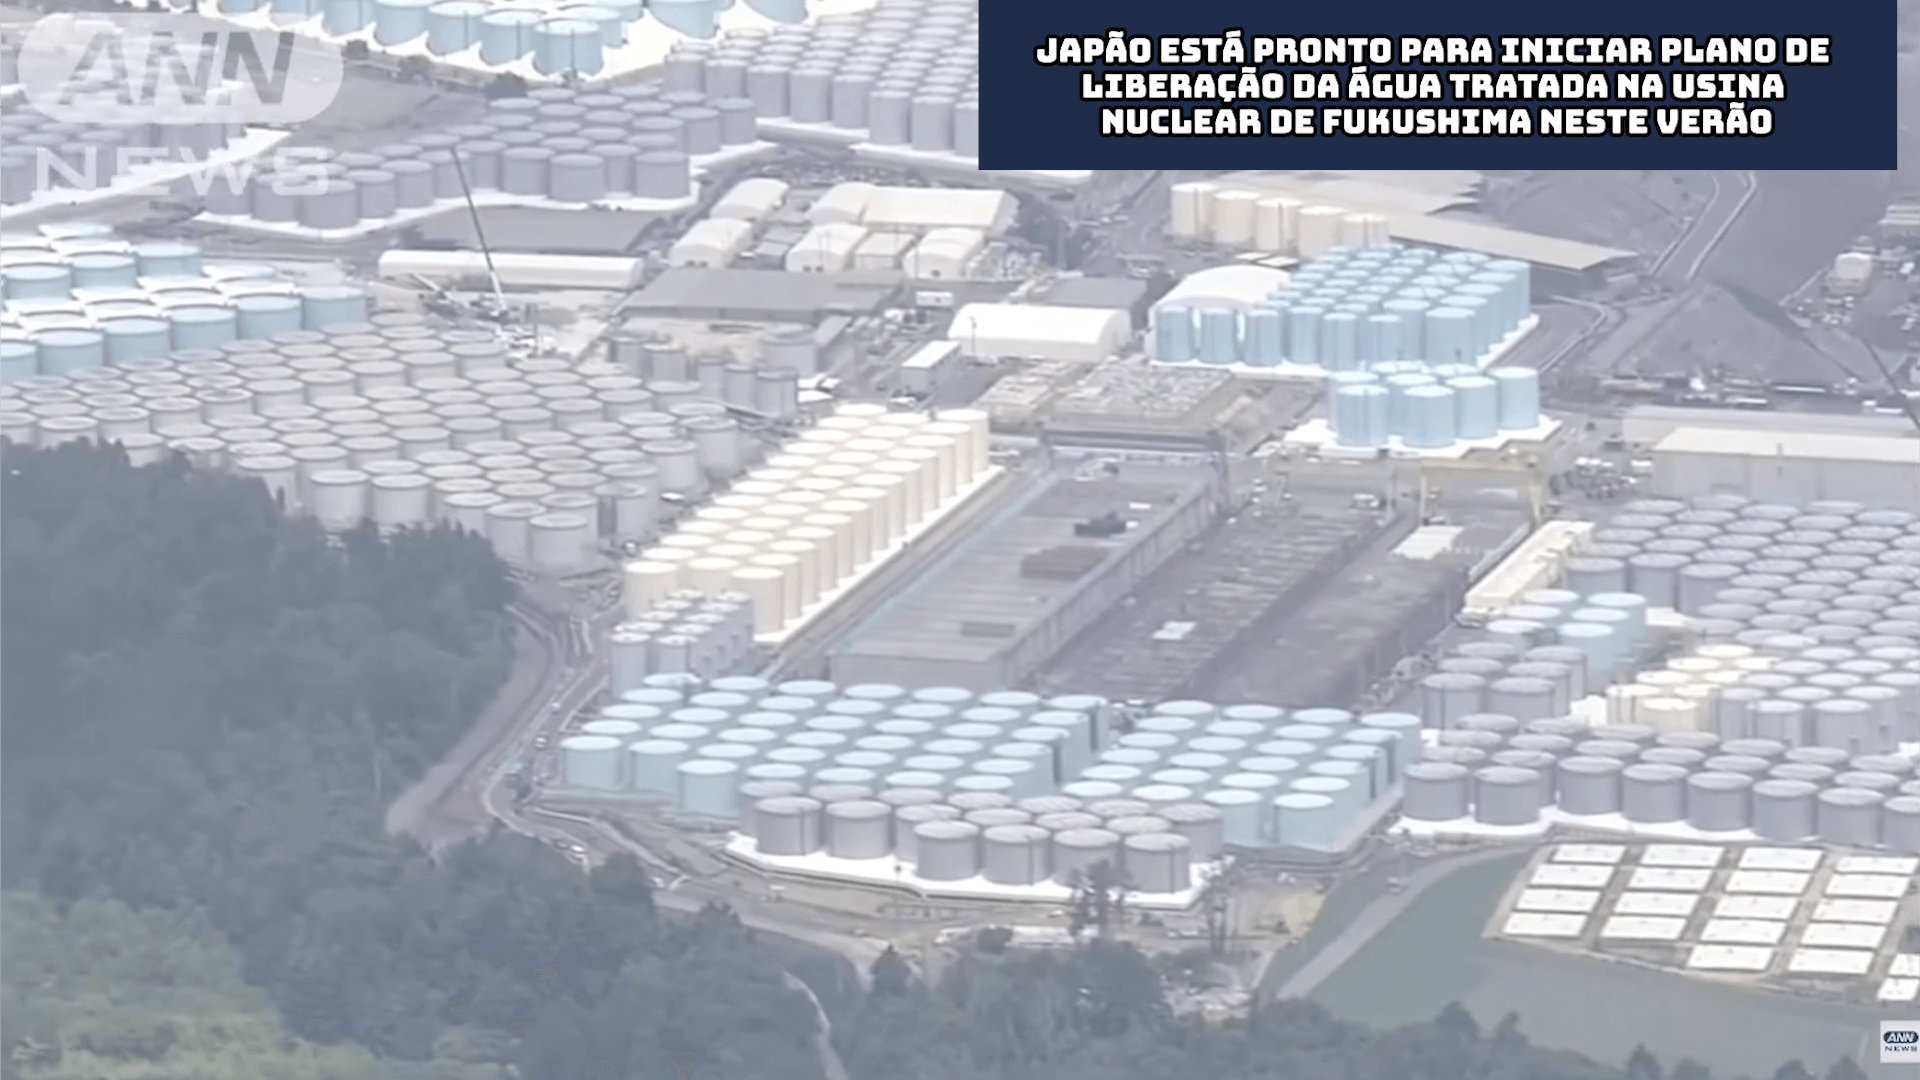 Japão está pronto para iniciar plano de liberação da água tratada na Usina Nuclear de Fukushima neste verão